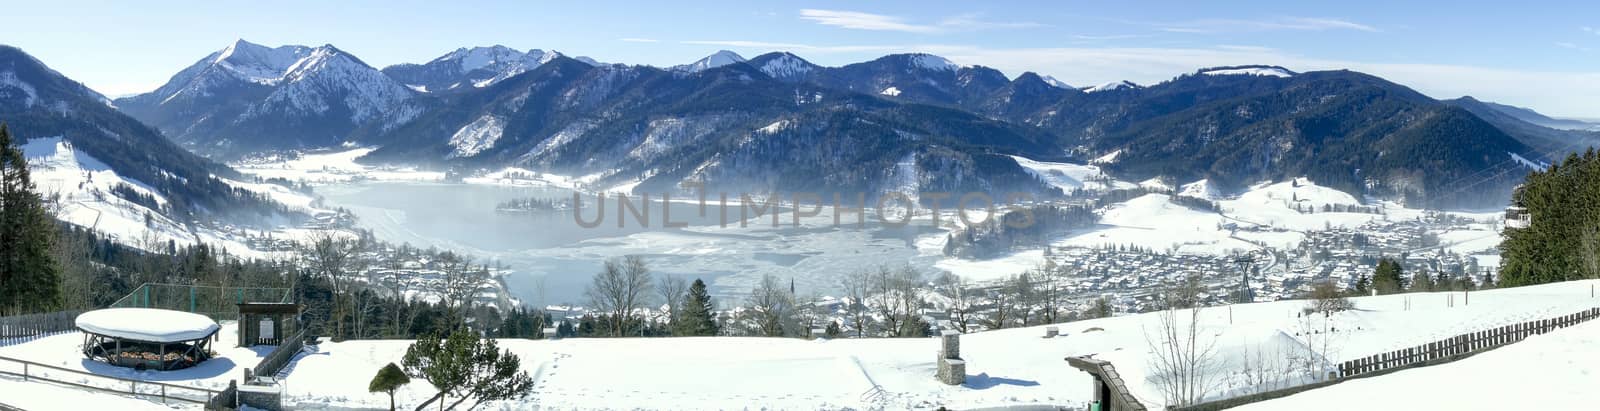 Schliersee Winter by magann